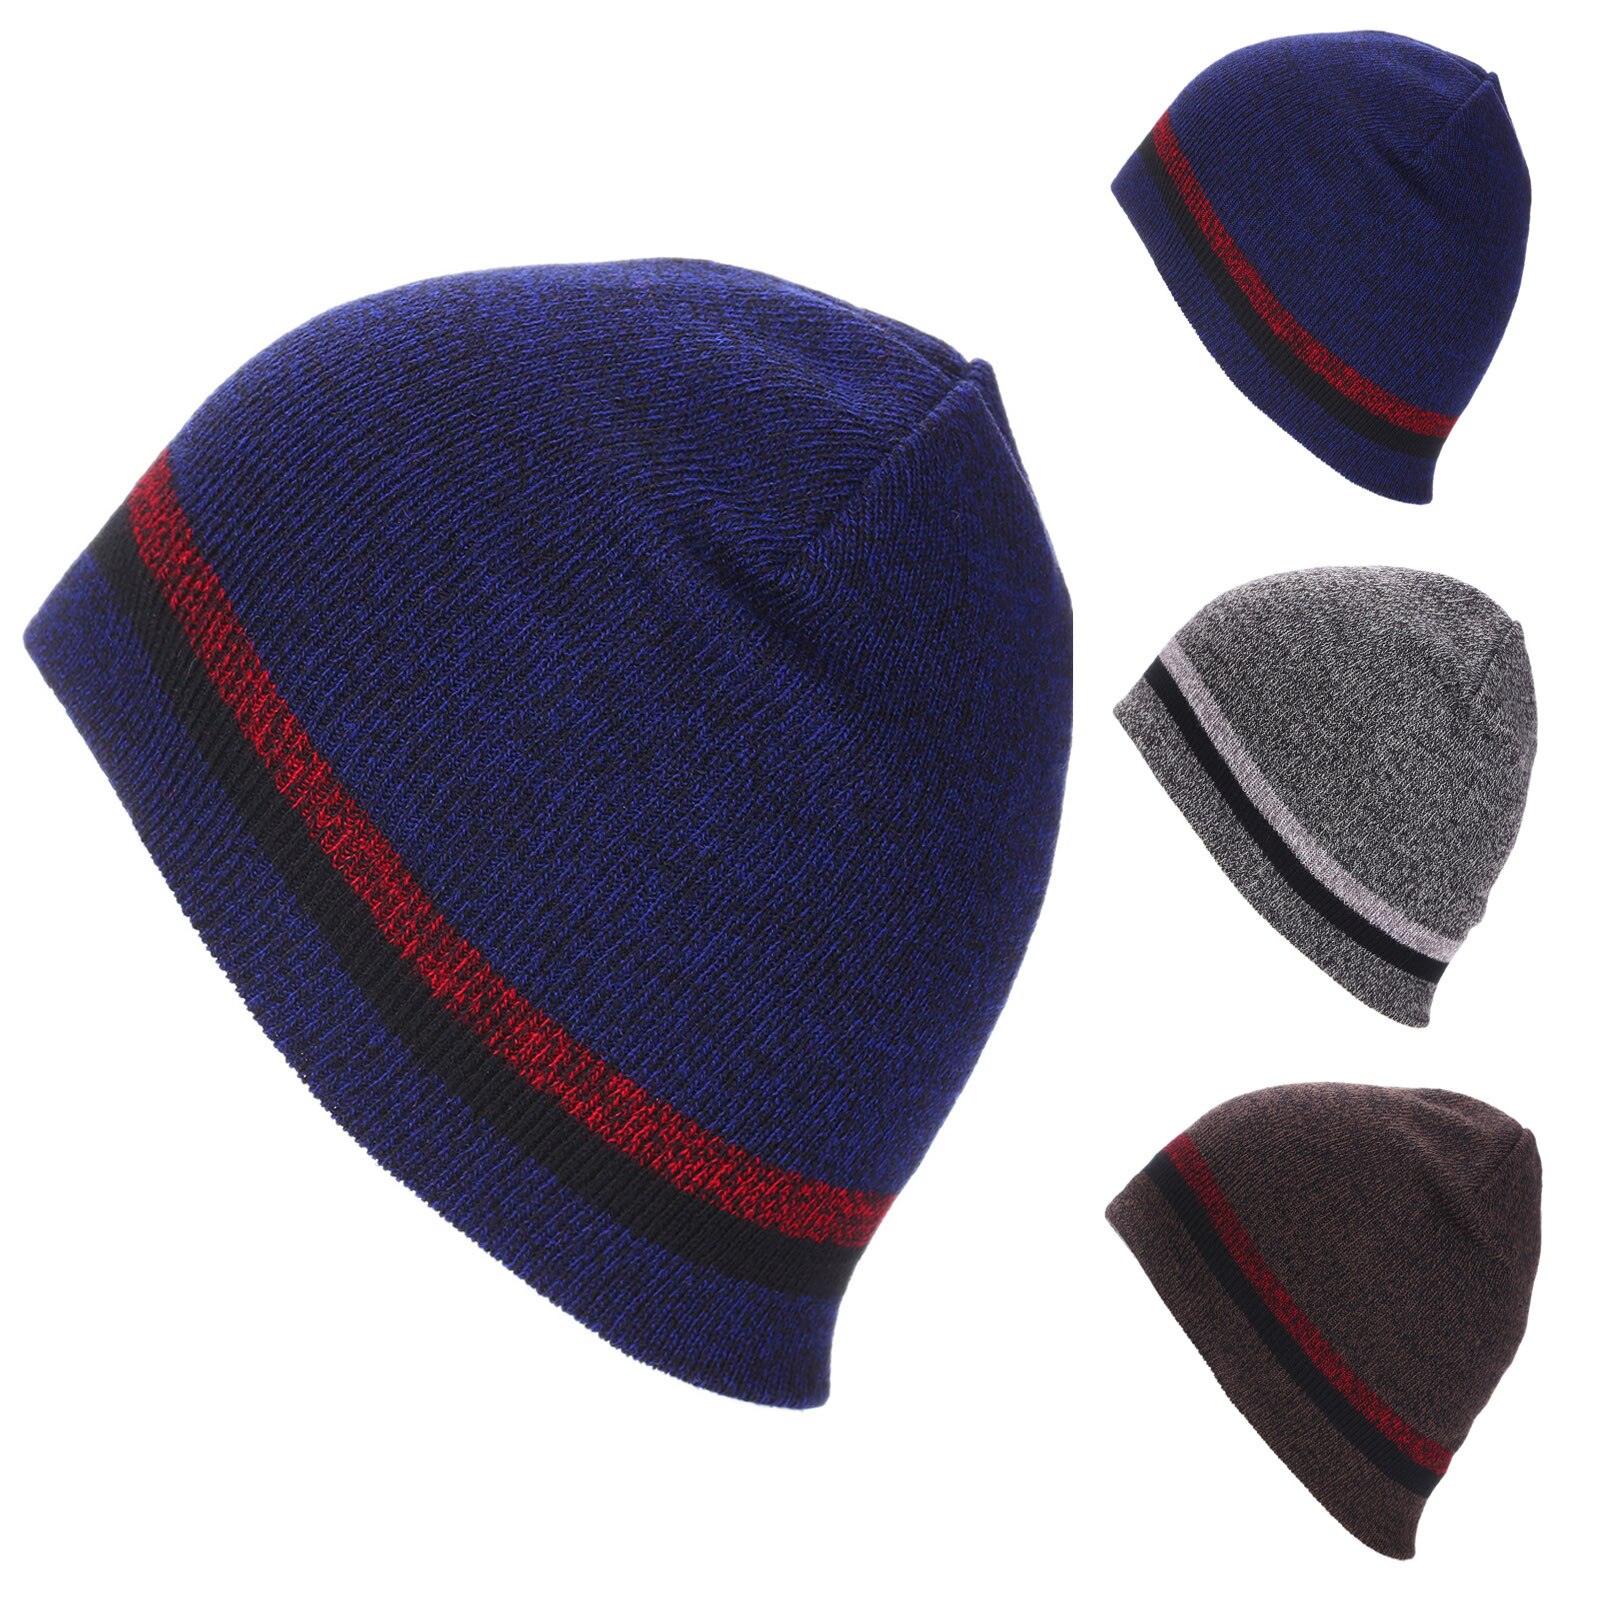 E cappello invernale alla moda cappello di lana lavorato a maglia paraorecchie spesse sci all'aperto ciclismo cappello caldo dolce E adorabile, caldo confortevole